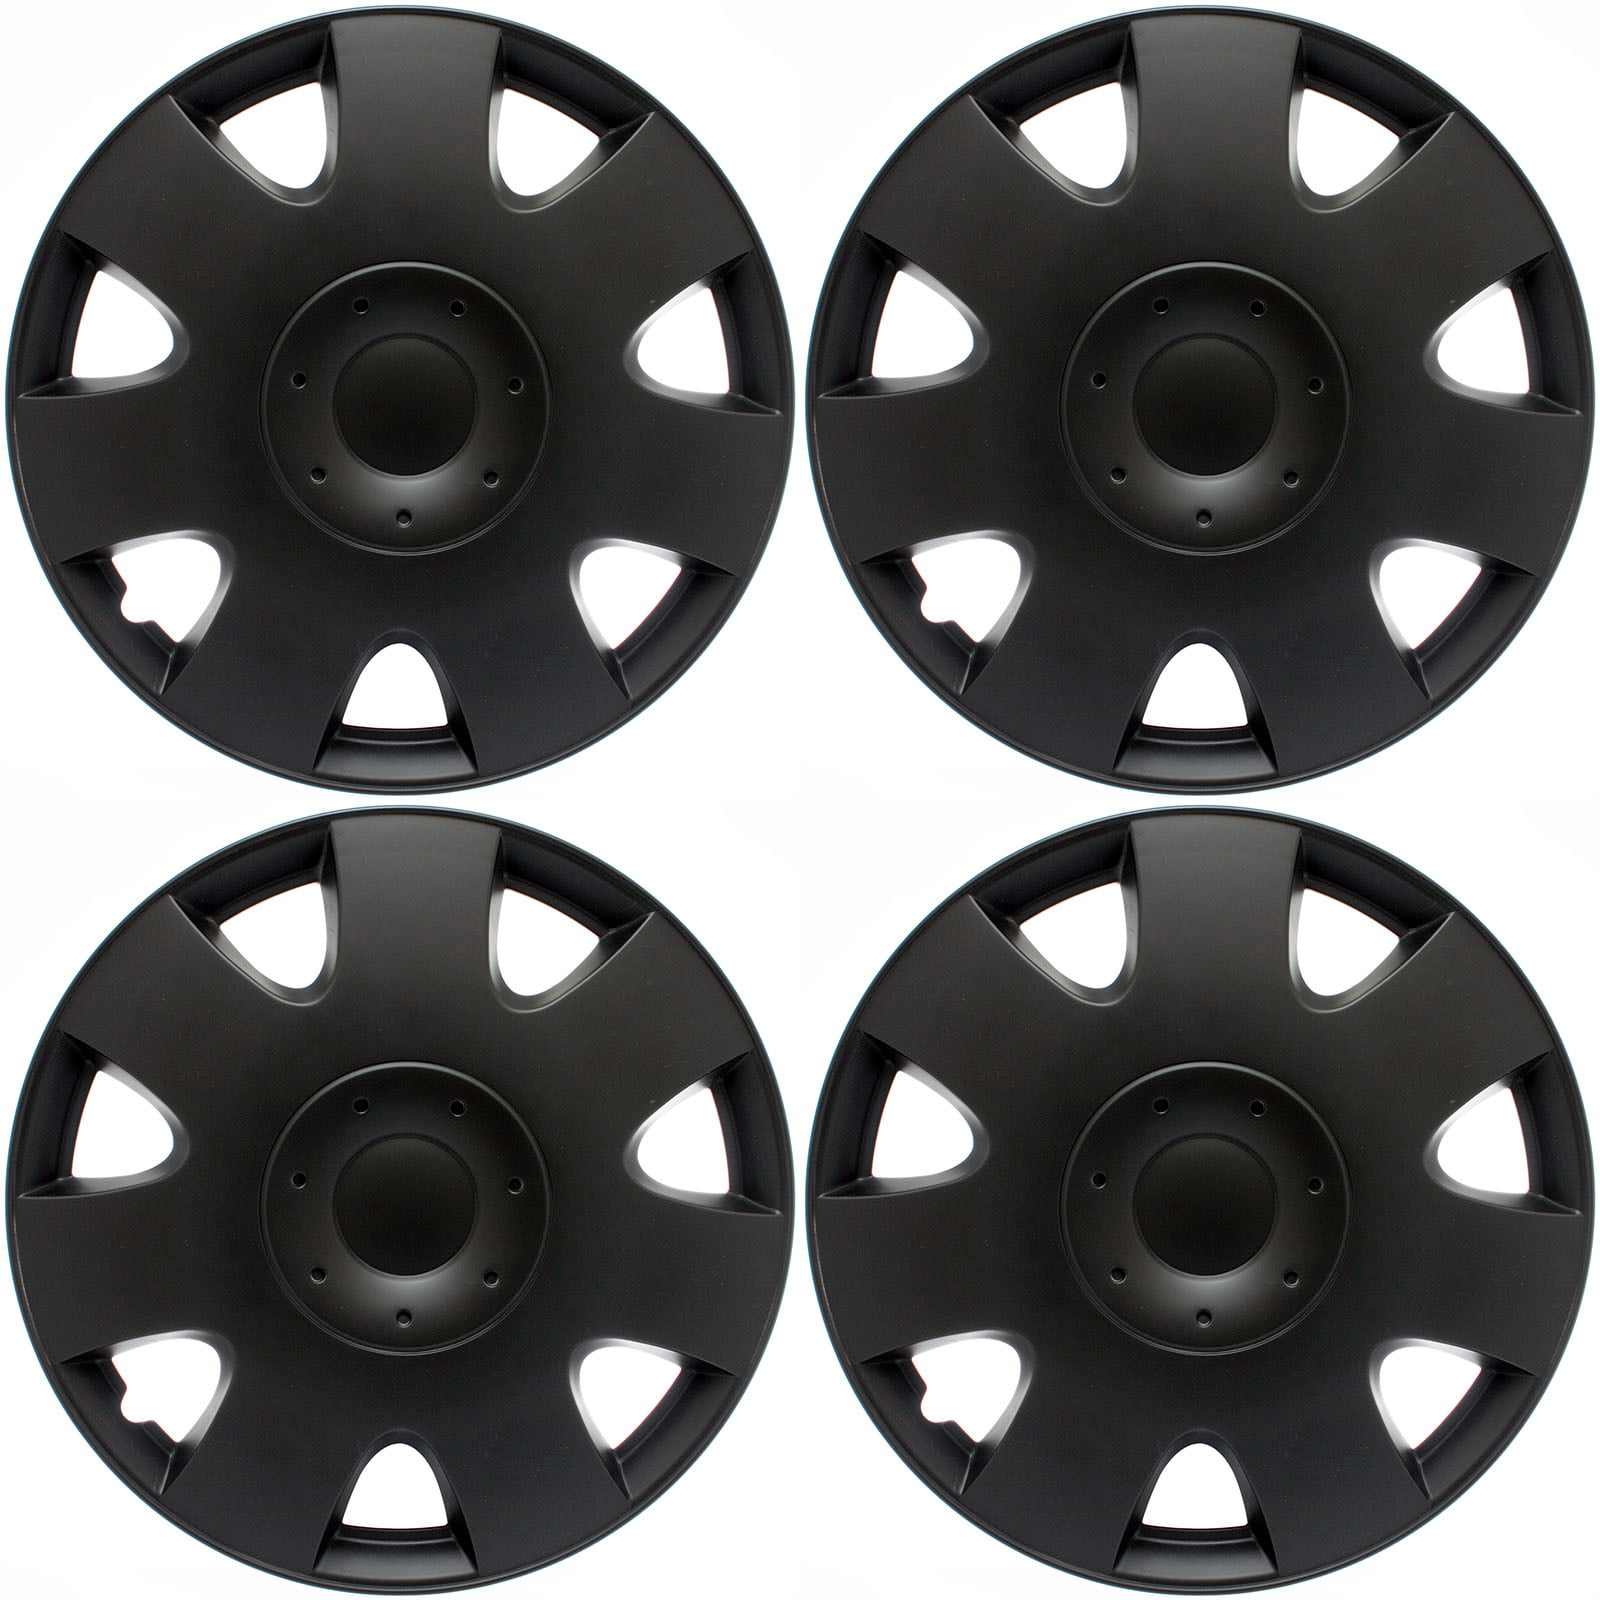 4 New Matte Black 15" Hub Caps Fits Volkswagen Vw Steel Wheel Covers Set Hubcaps 